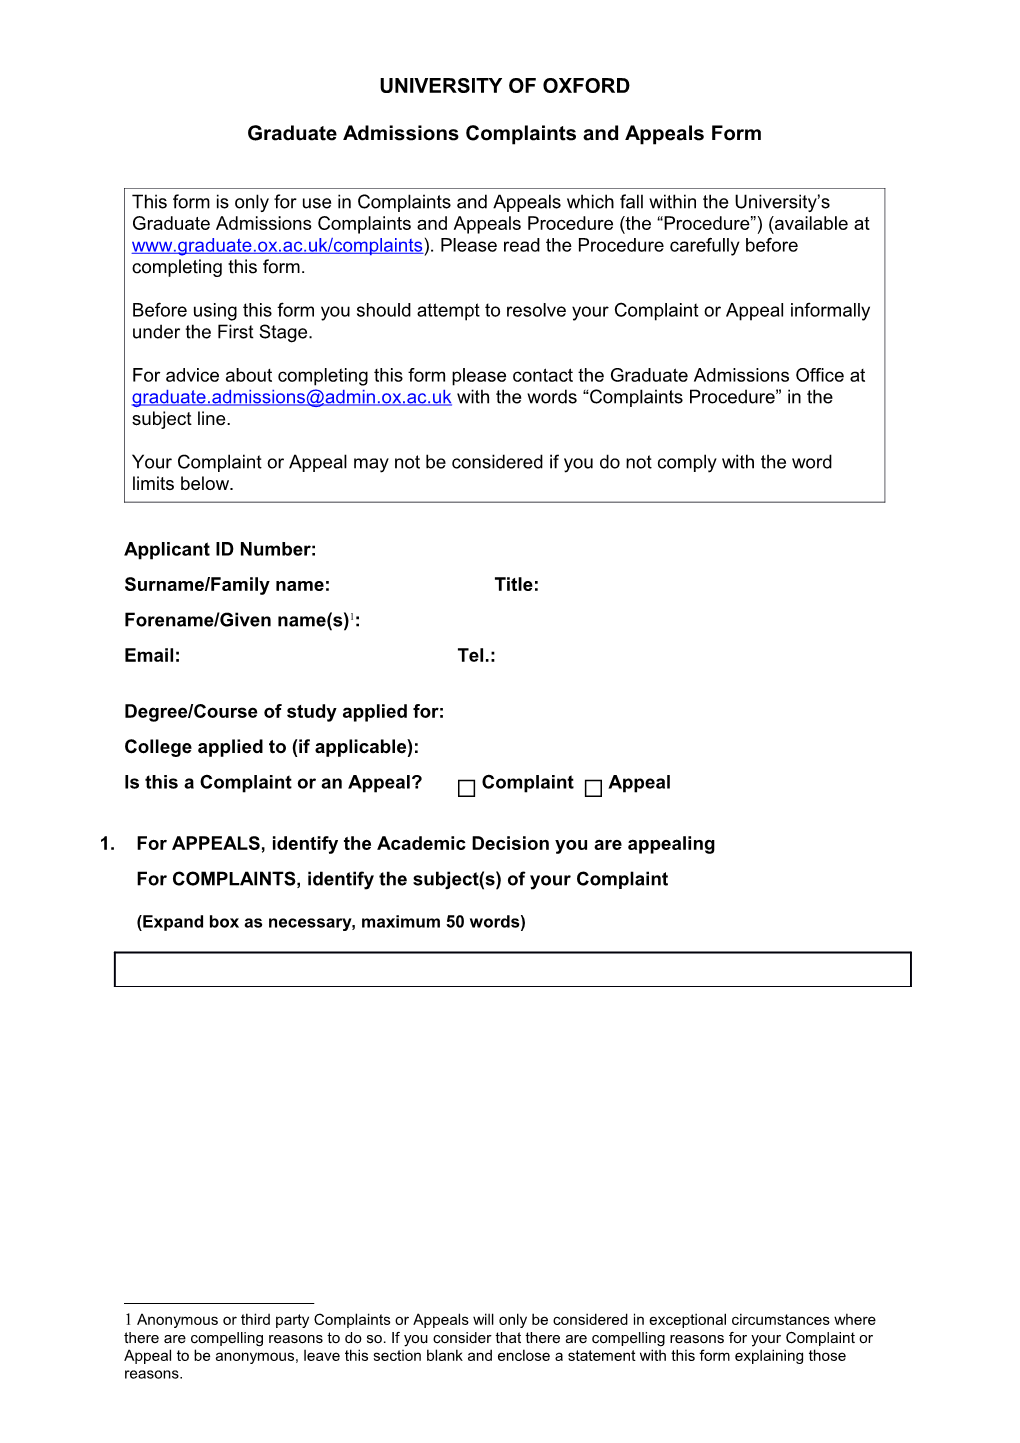 Student Complaints Procedure: Application Form